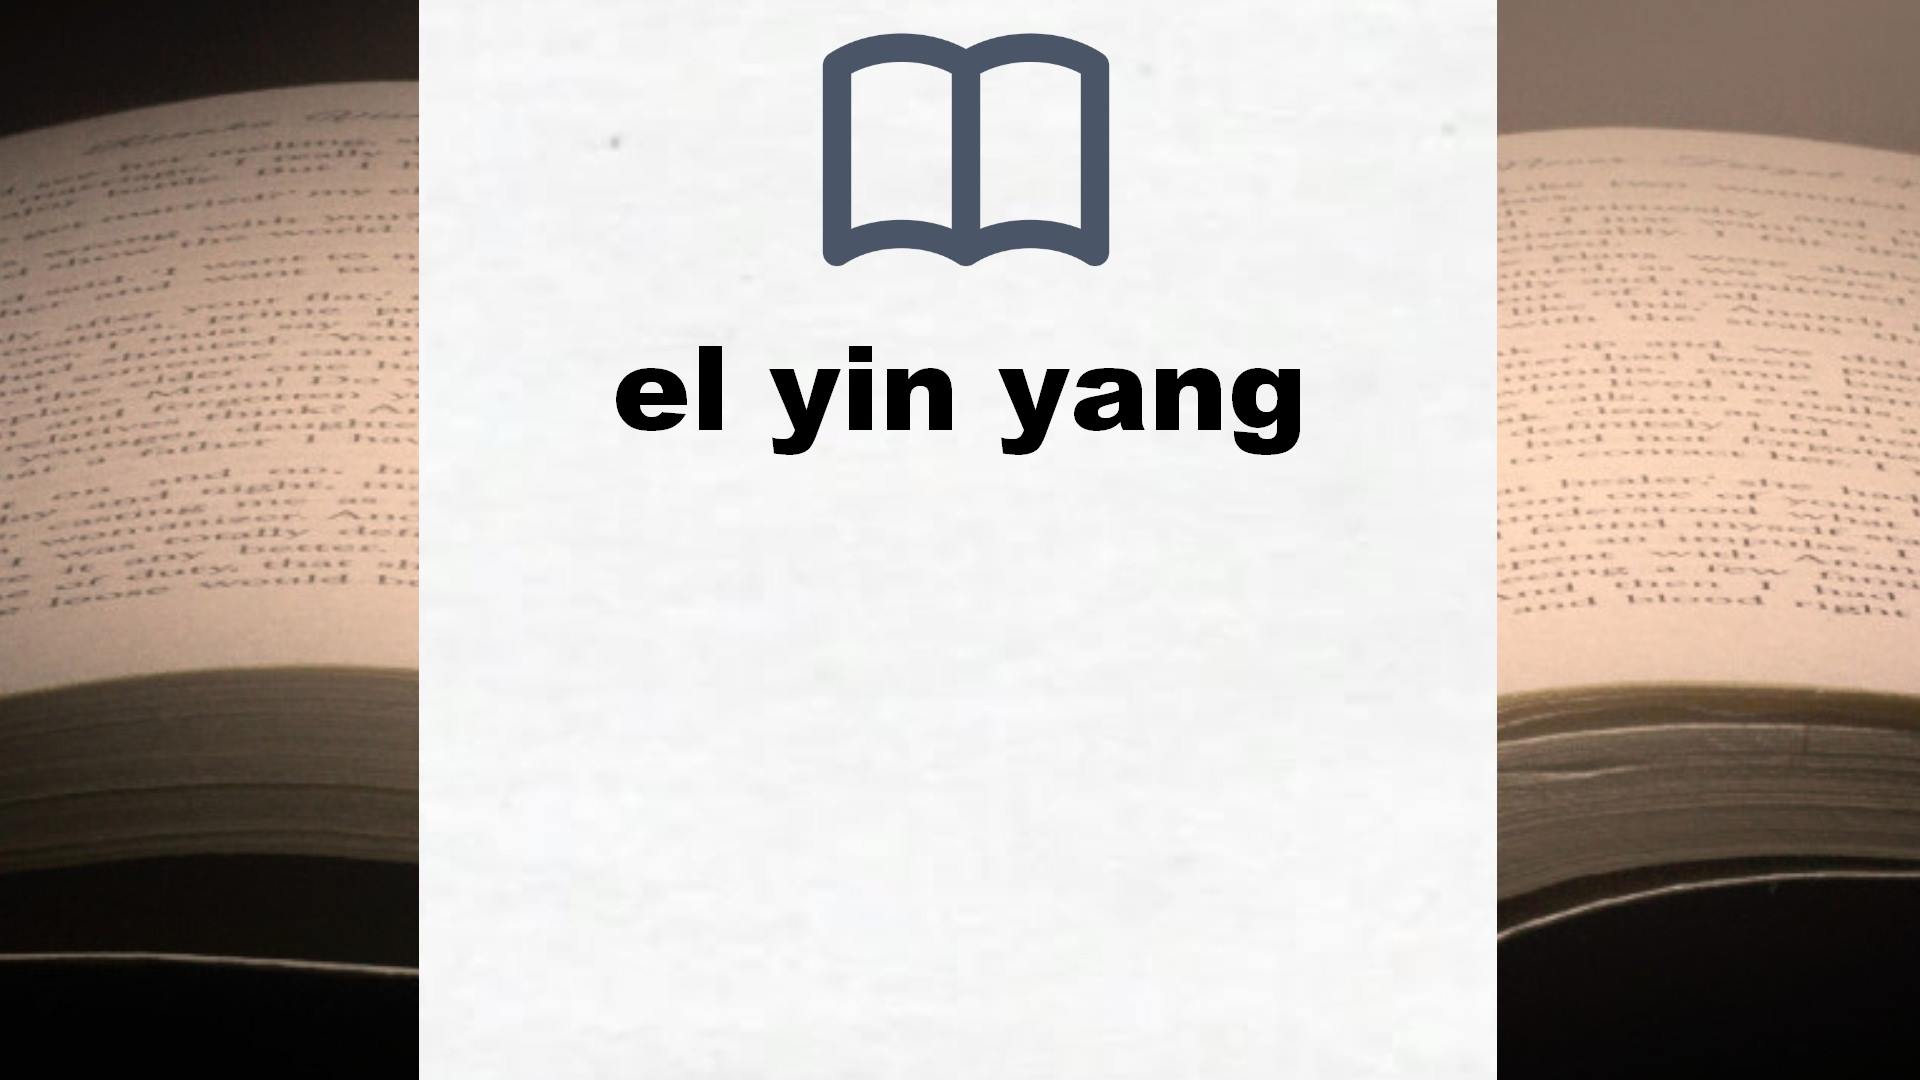 Libros sobre el yin yang